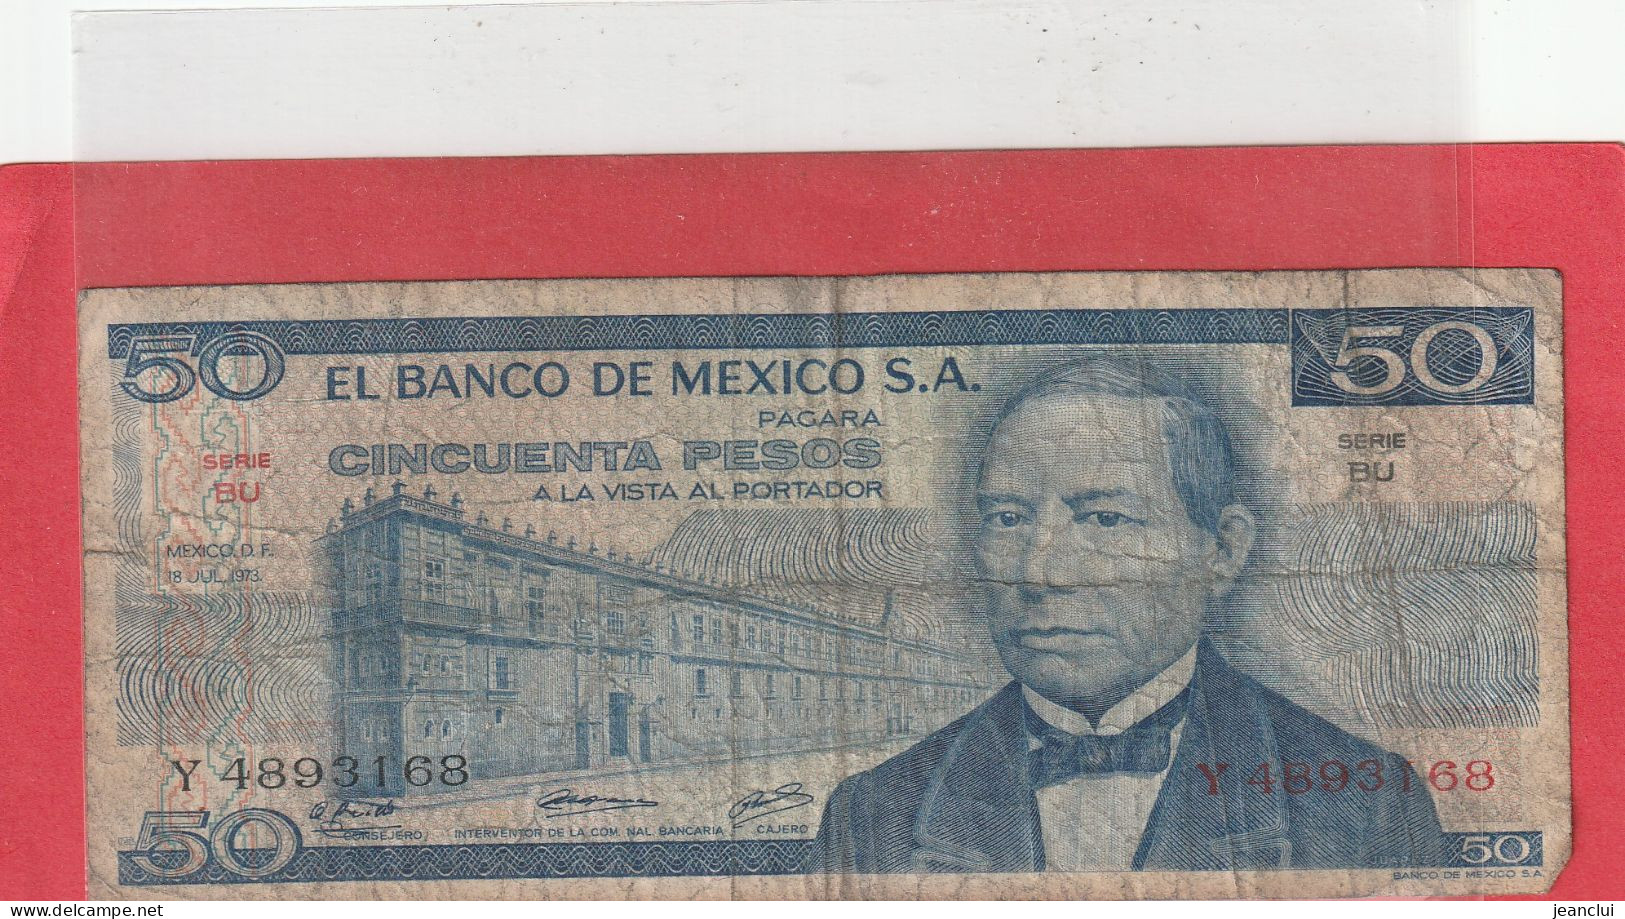 EL BANCO DE MEXICO S.A.  .  50 PESOS  .  18-7-1973  .  N°   Y 4893168 .  2 SCANNES  .  BILLET TRES USITE - México